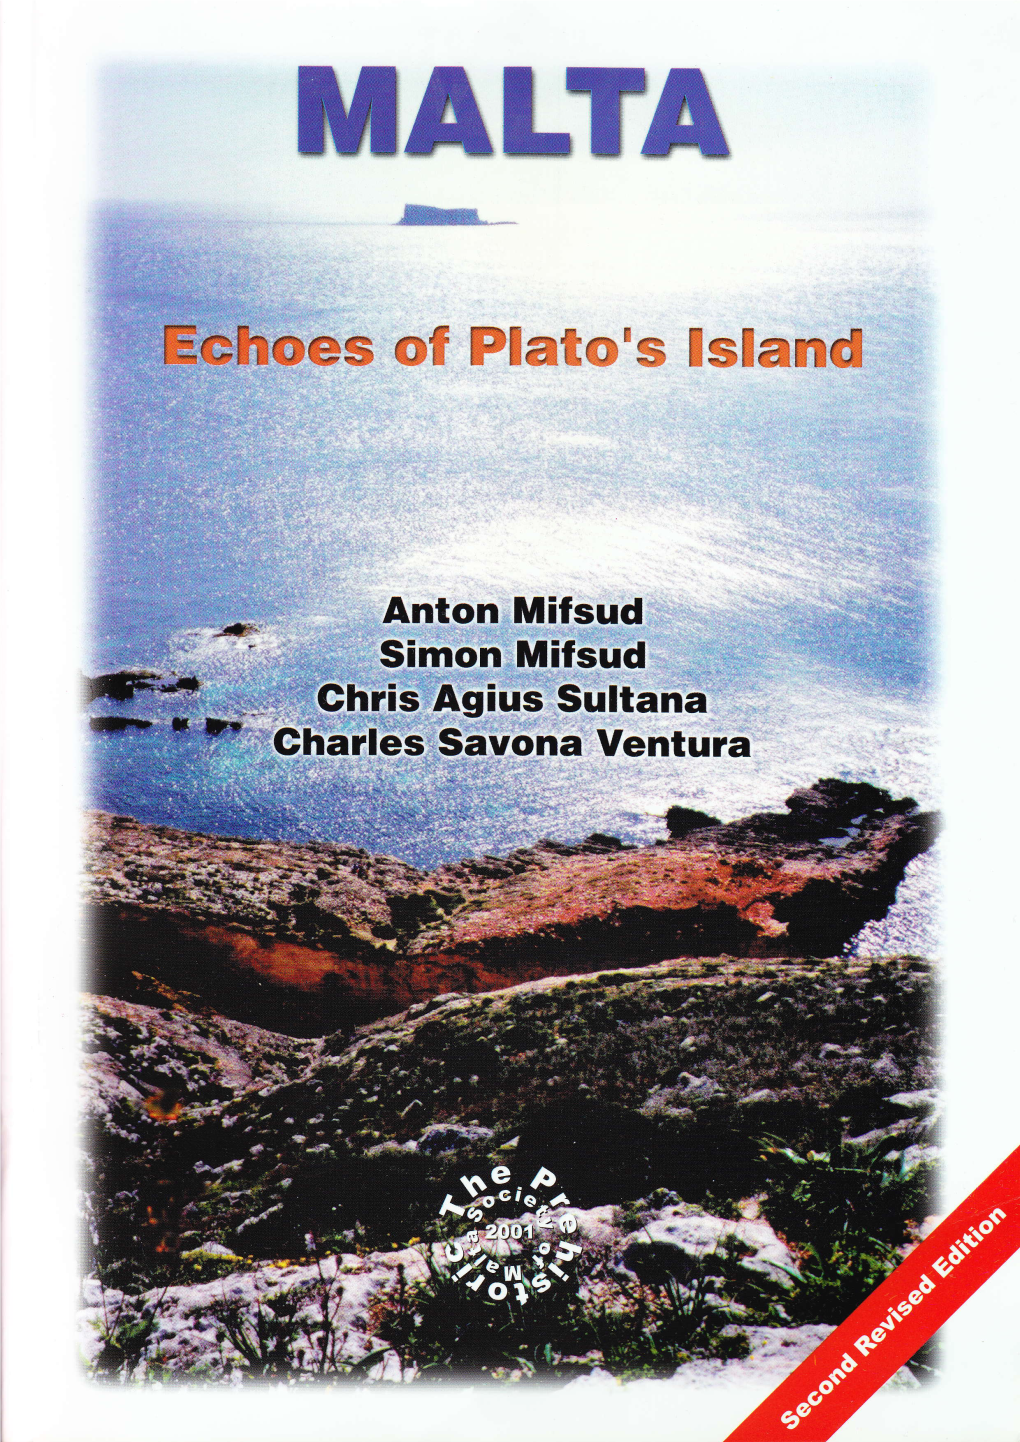 Malta Echoes of Plato's Island